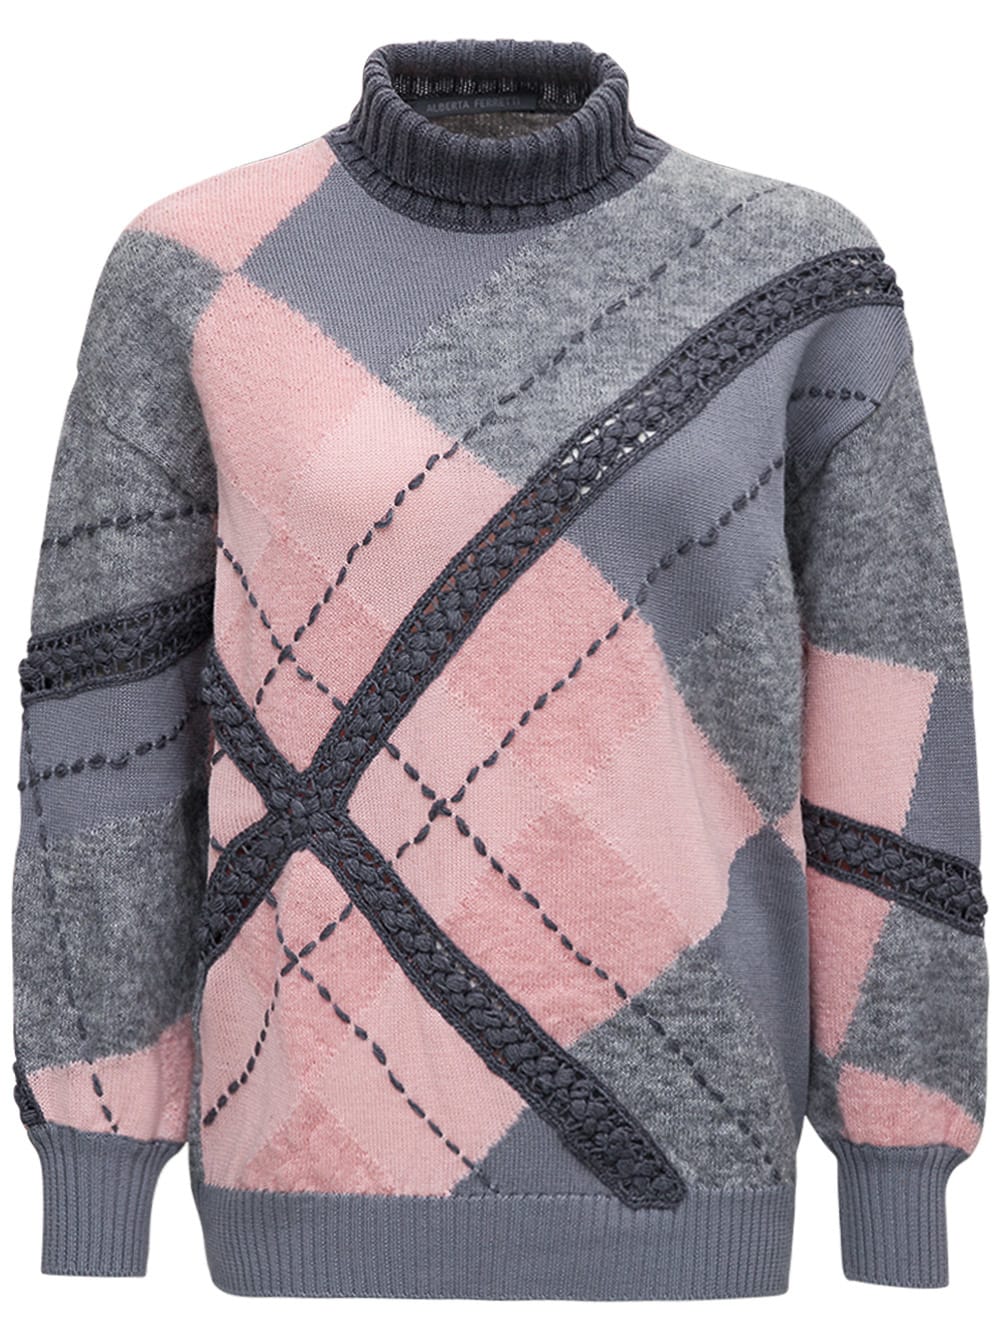 Alberta Ferretti Multicolor Wool Sweater